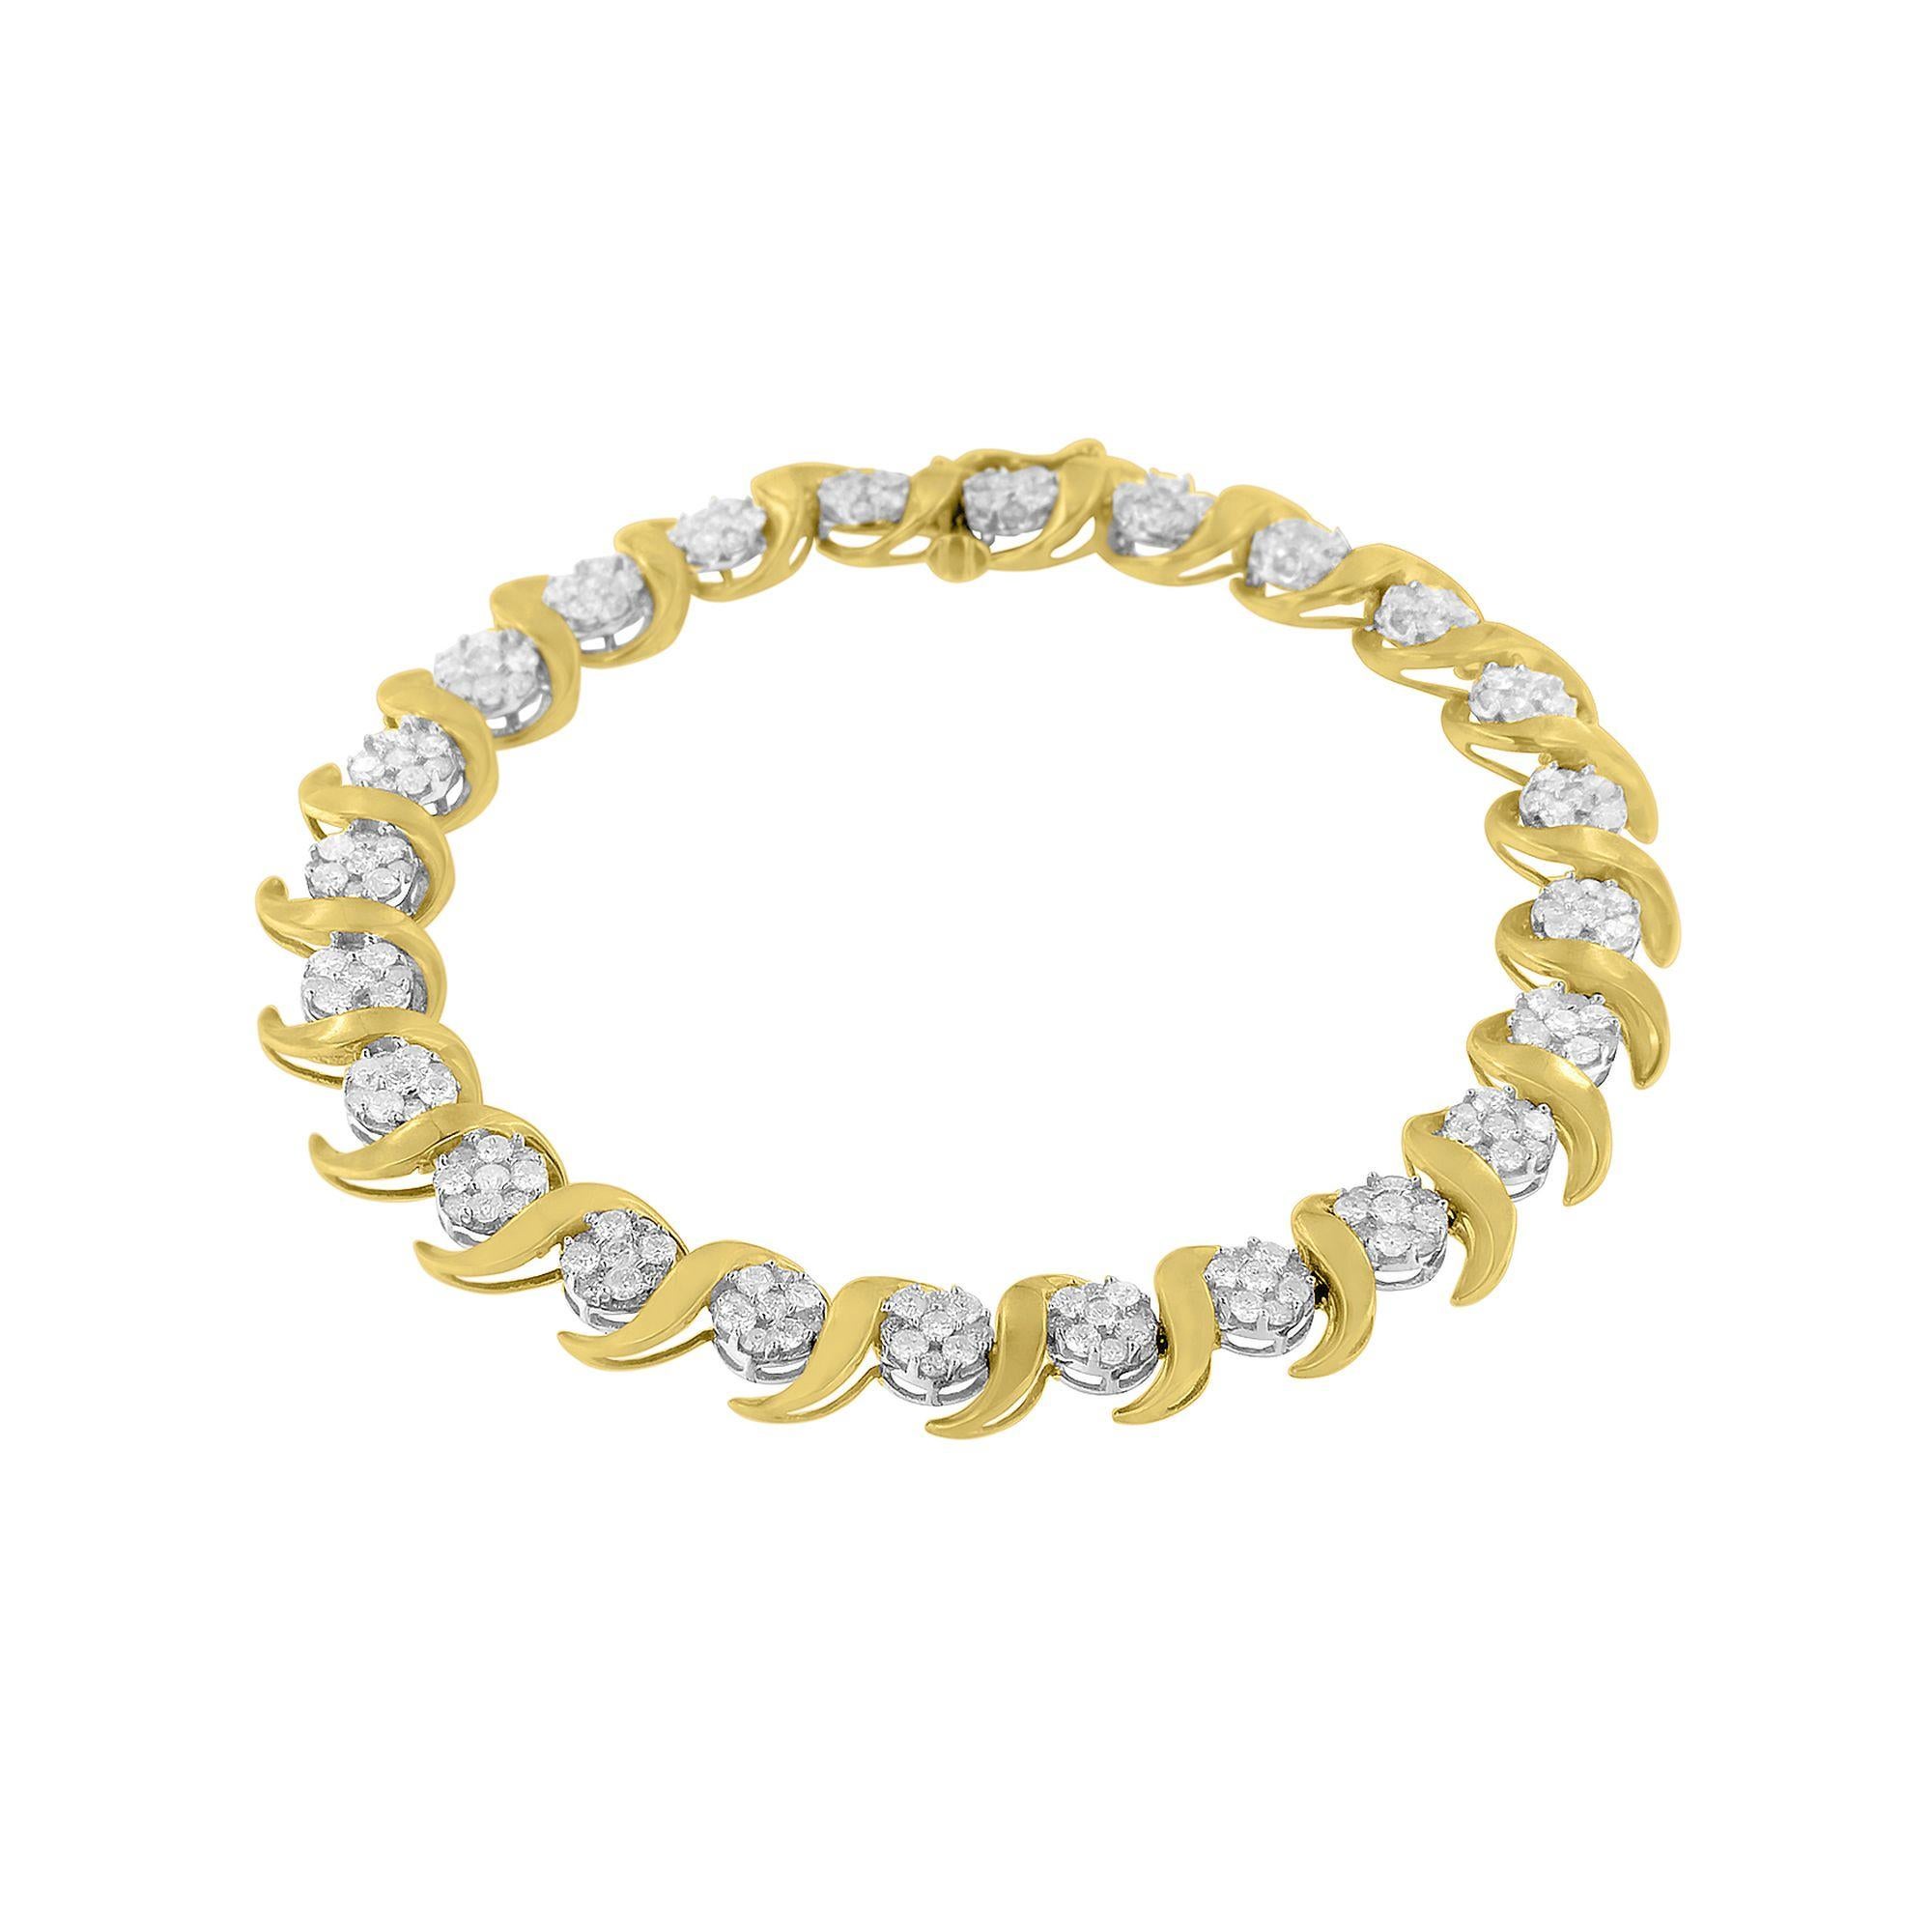 Wir präsentieren ein schillerndes Meisterwerk, das die Essenz von Eleganz und Weiblichkeit perfekt einfängt - ein 10K Yellow Gold Diamond Floral Link Bracelet. Dieses mit äußerster Präzision gefertigte und mit 216 exquisiten Diamanten im Rundschliff